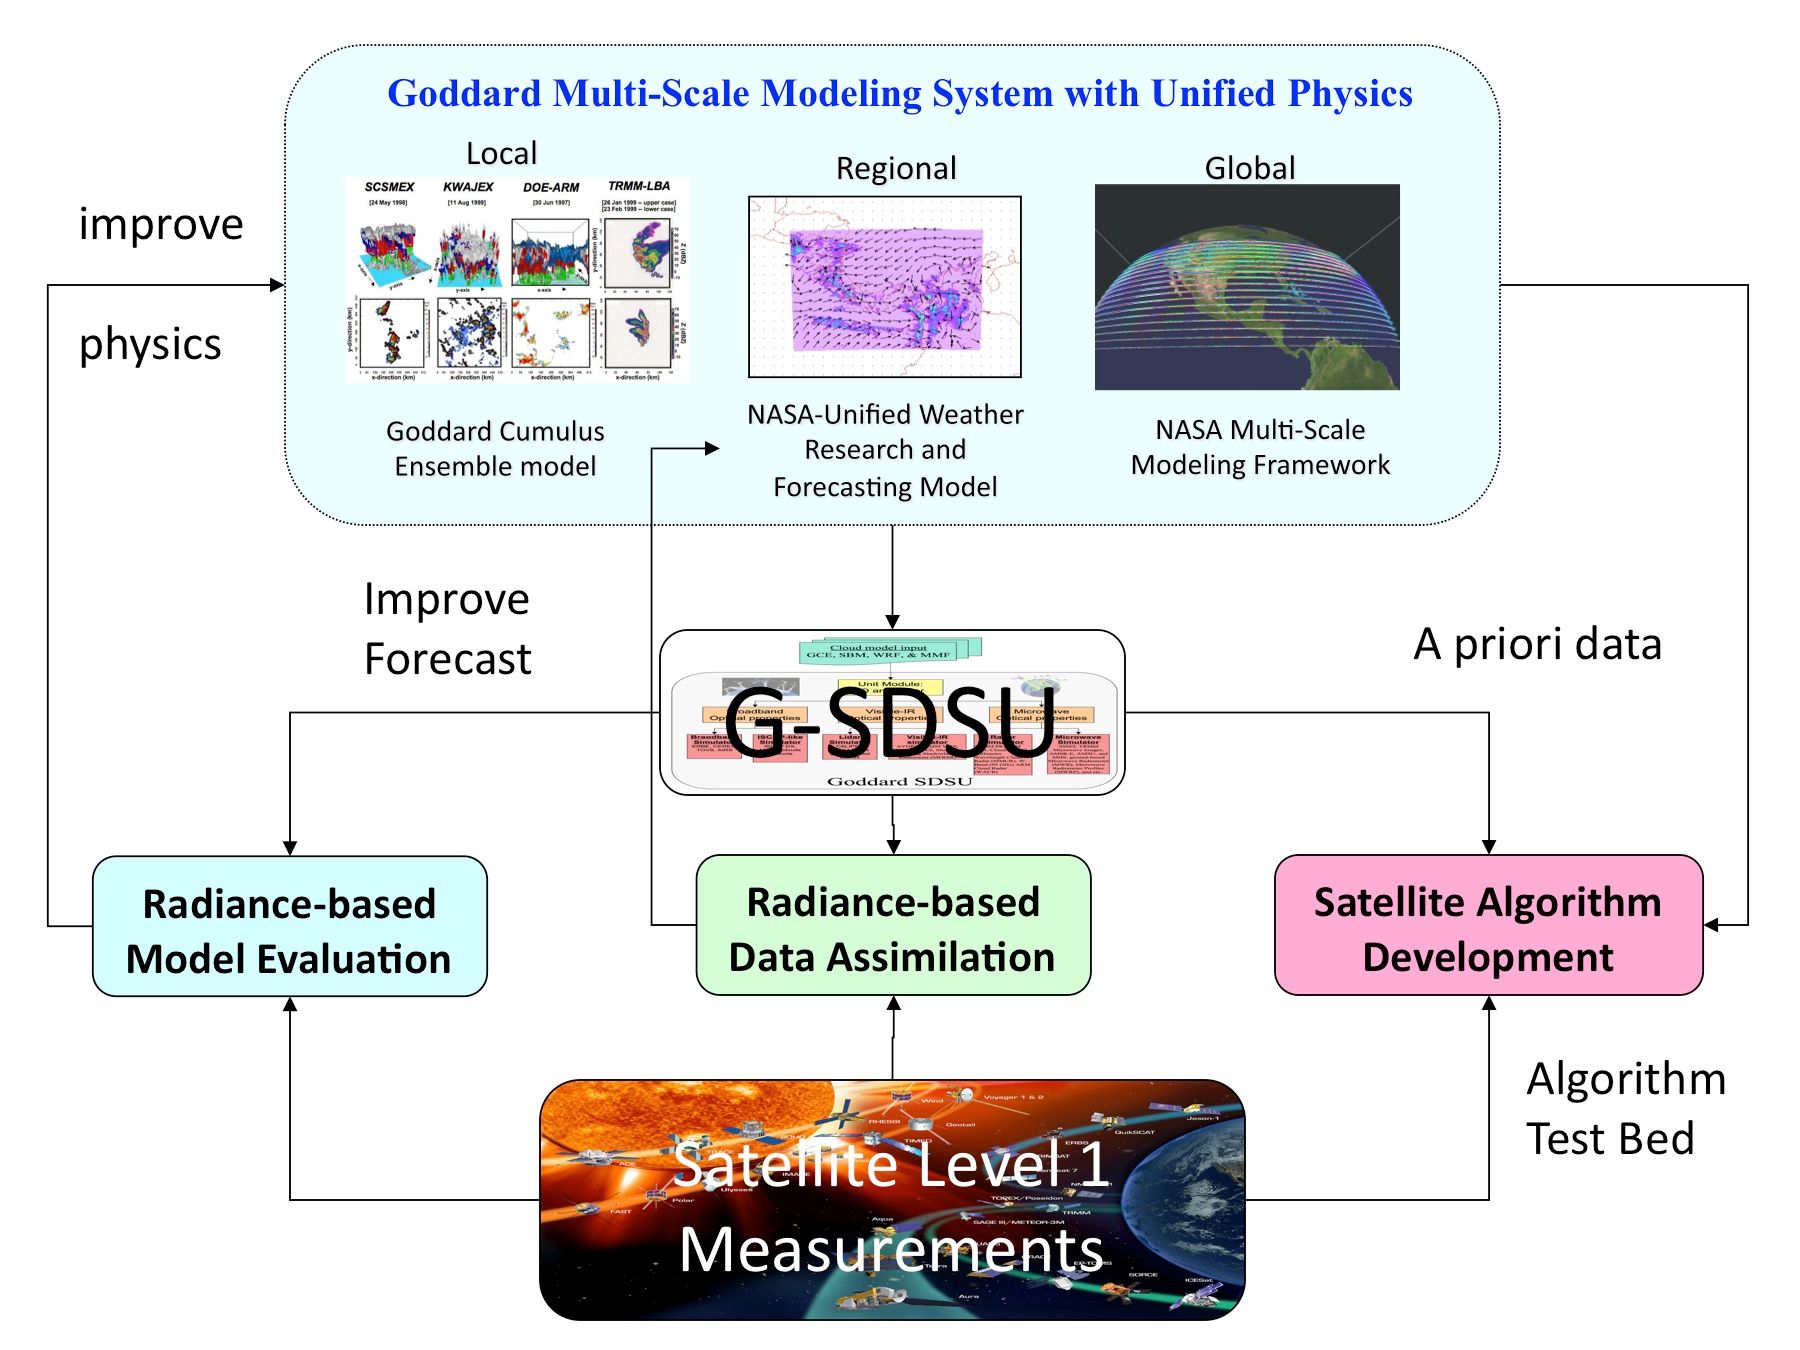 G-SDSU schematic